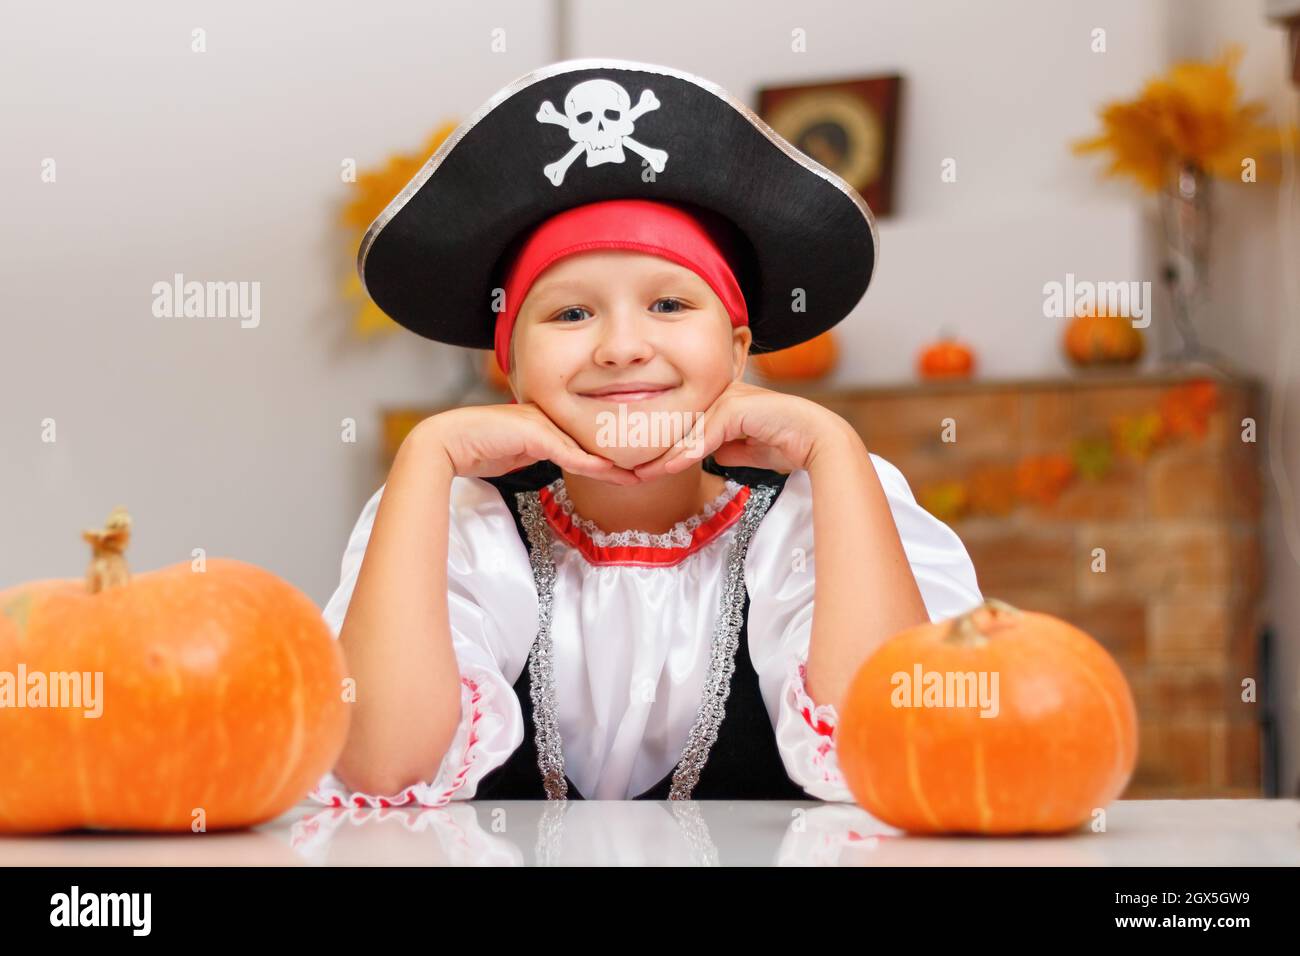 Halloween zu Hause feiern. Ein kleines Mädchen, das als Pirat gekleidet ist, sitzt mit Kürbissen an einem Tisch. Stockfoto